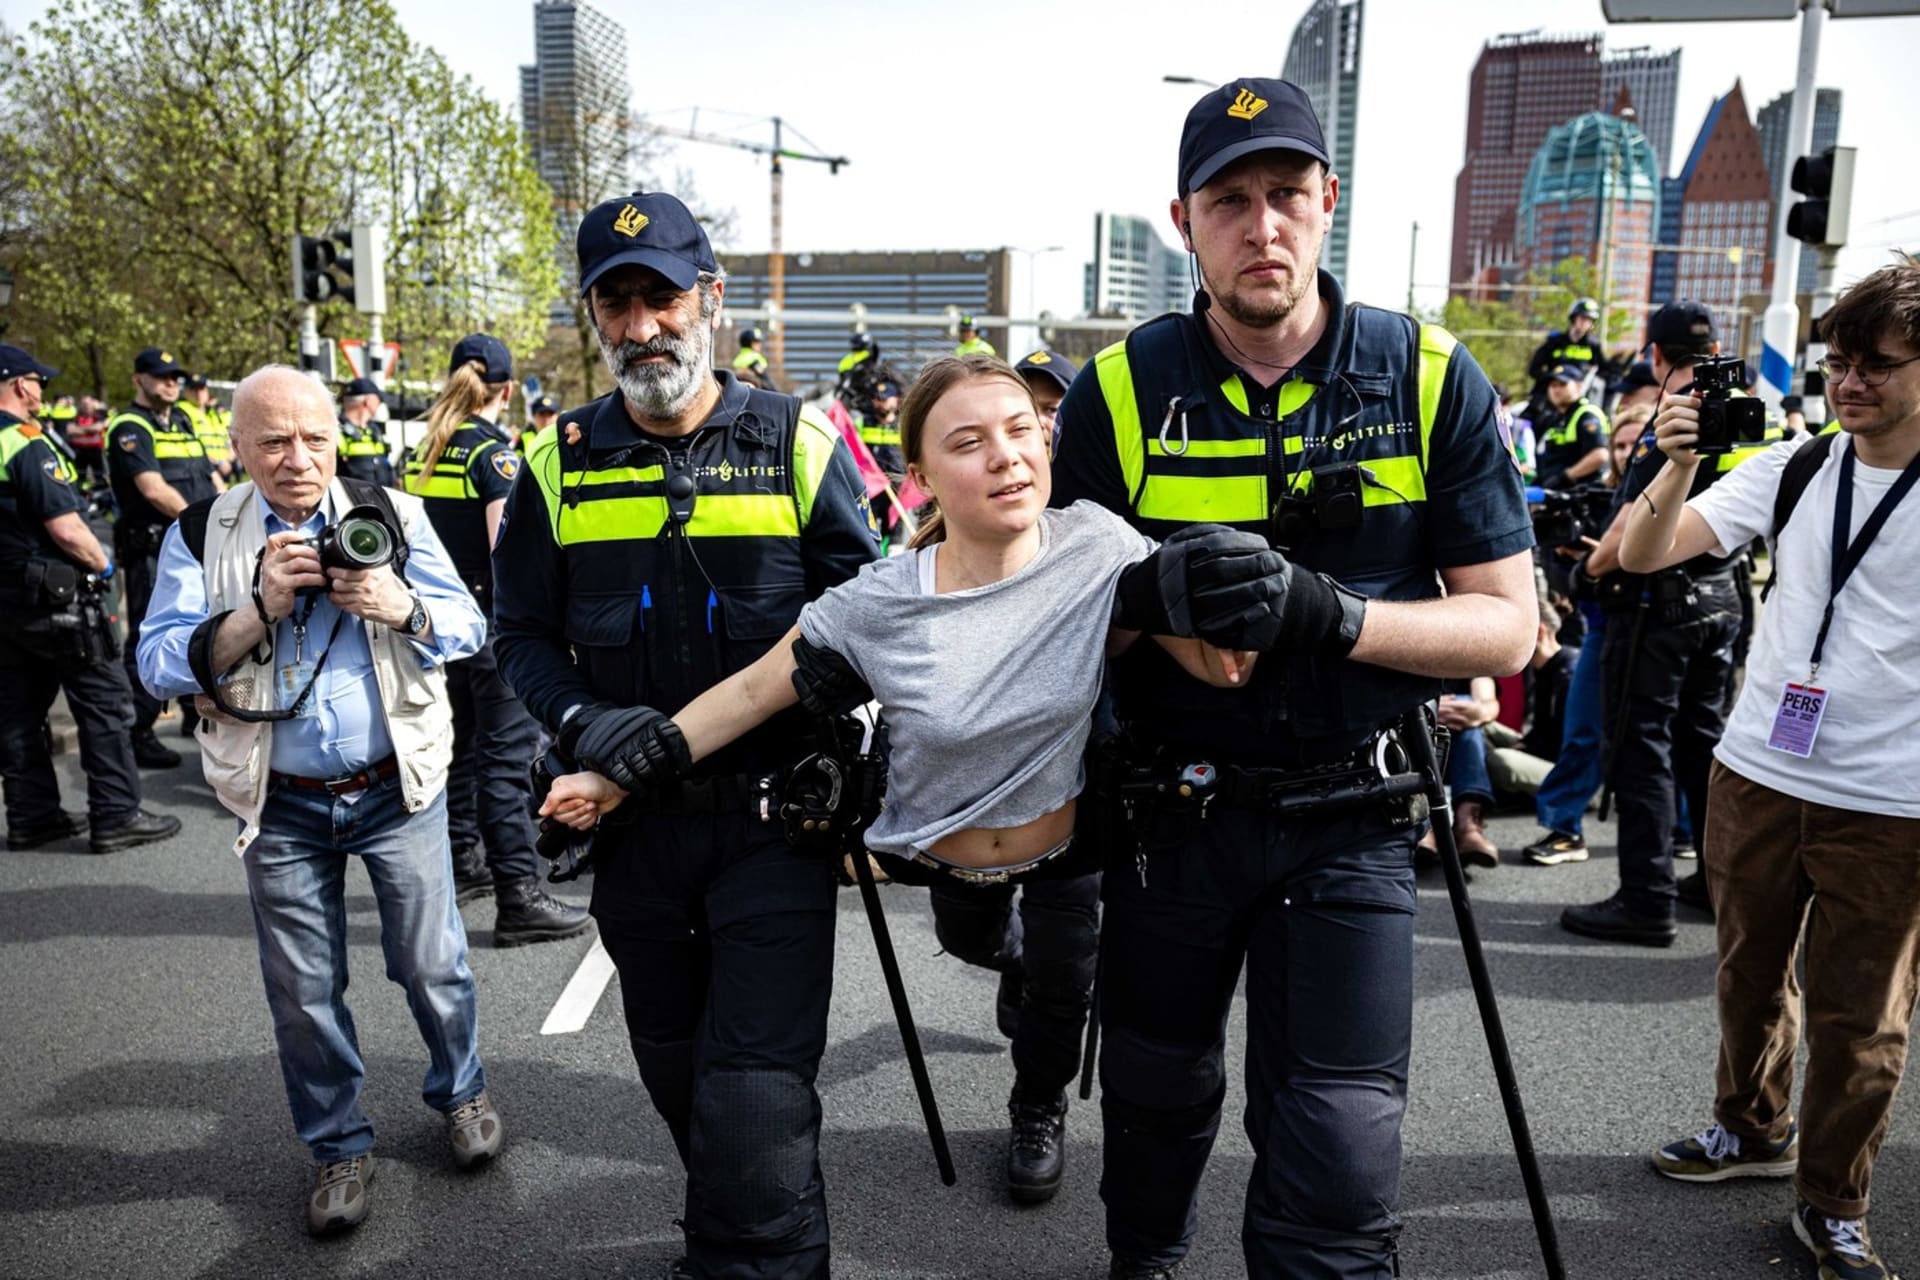 Policie zadržela na demonstraci v Haagu klimatickou aktivistku Thunbergovou